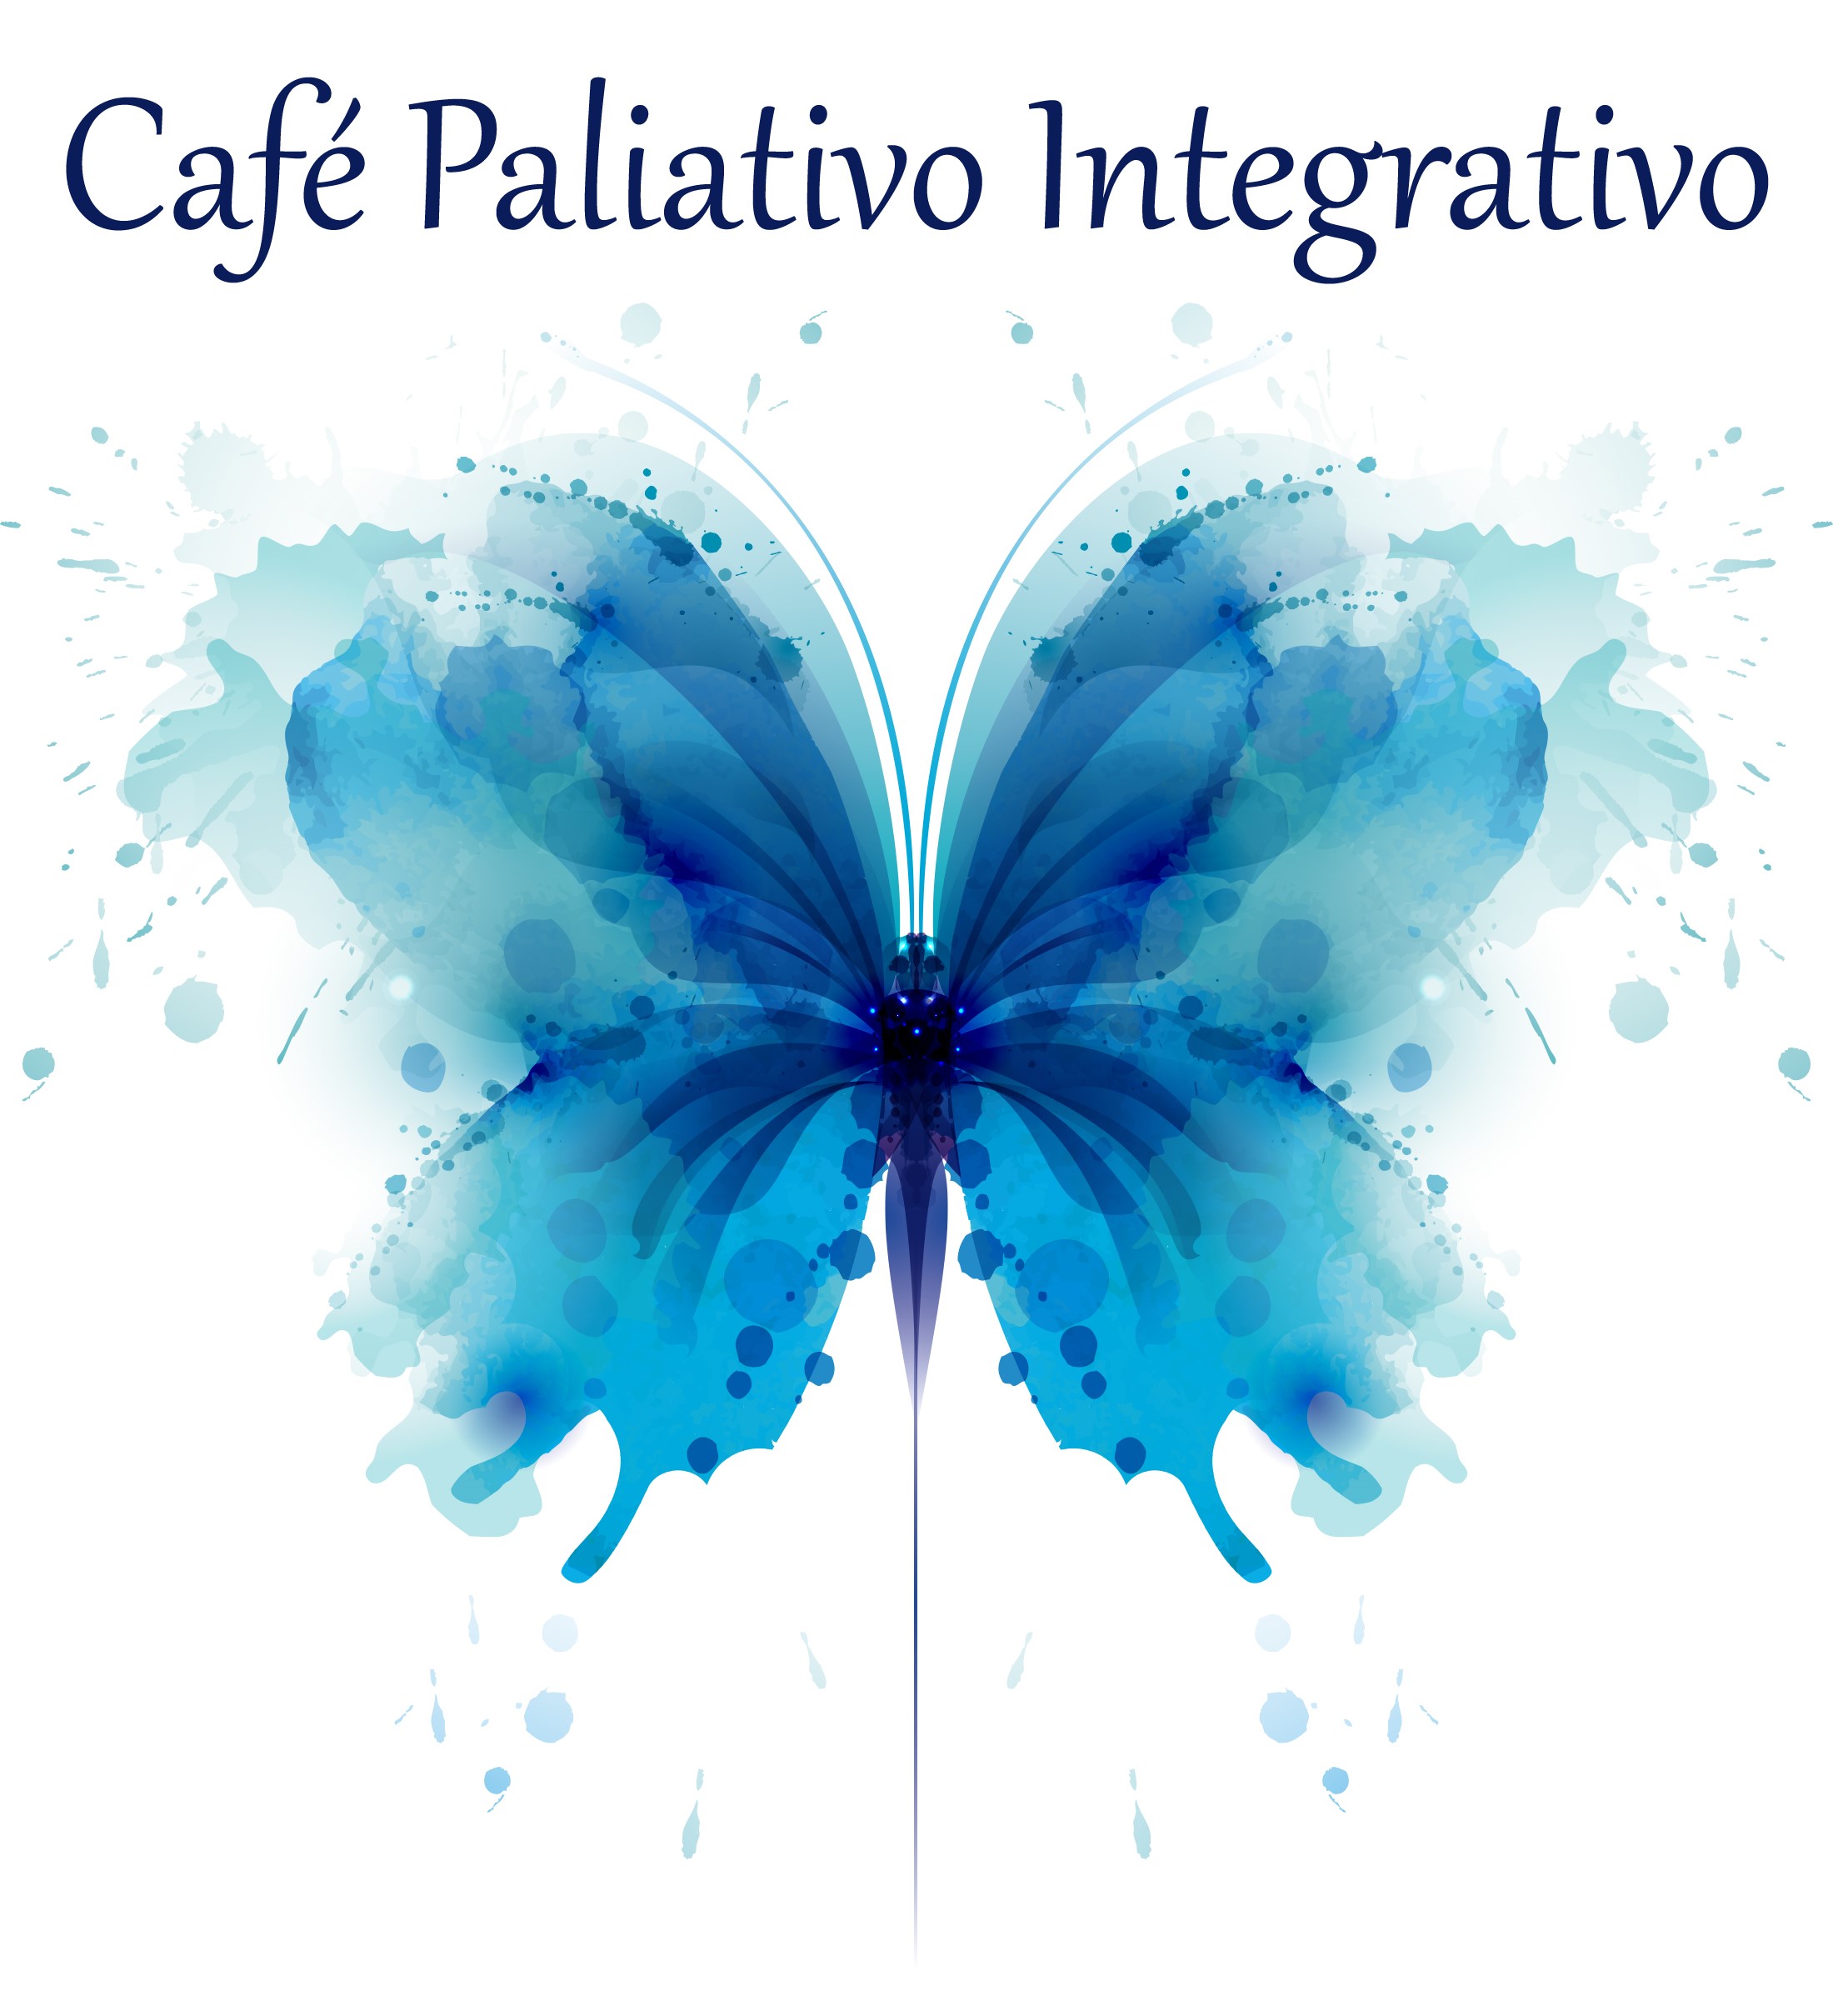 ANCP abre espaço para divulgação e apoio a iniciativa Café Paliativo Integrativo